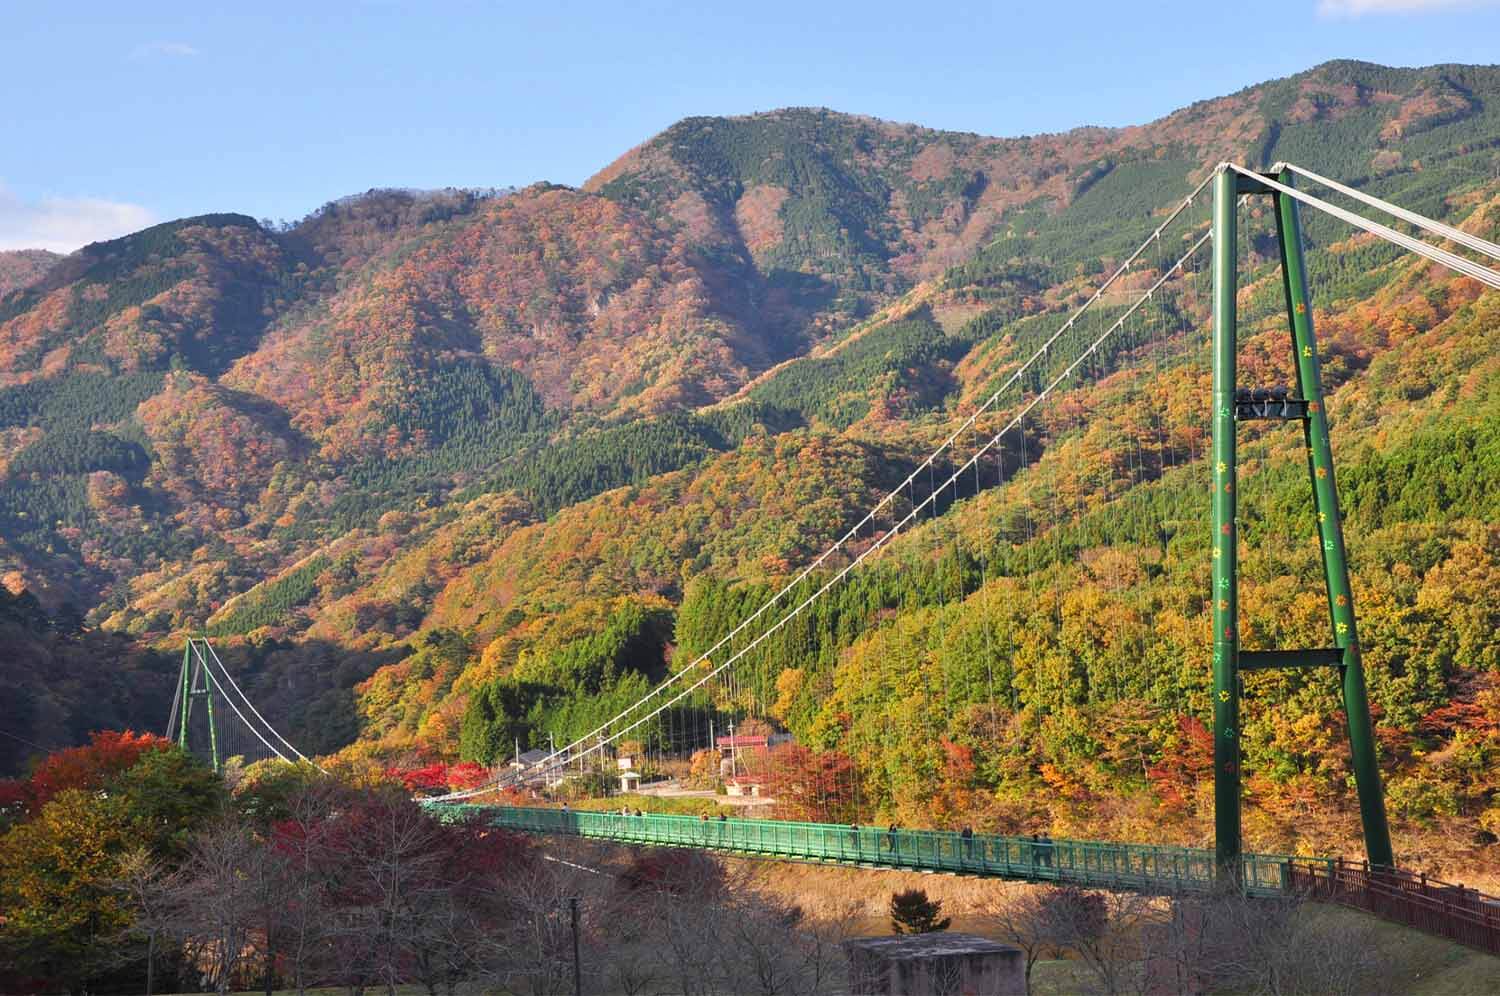 ワイヤーで支える無補剛桁歩道吊橋としては本州最大級の規模を誇る